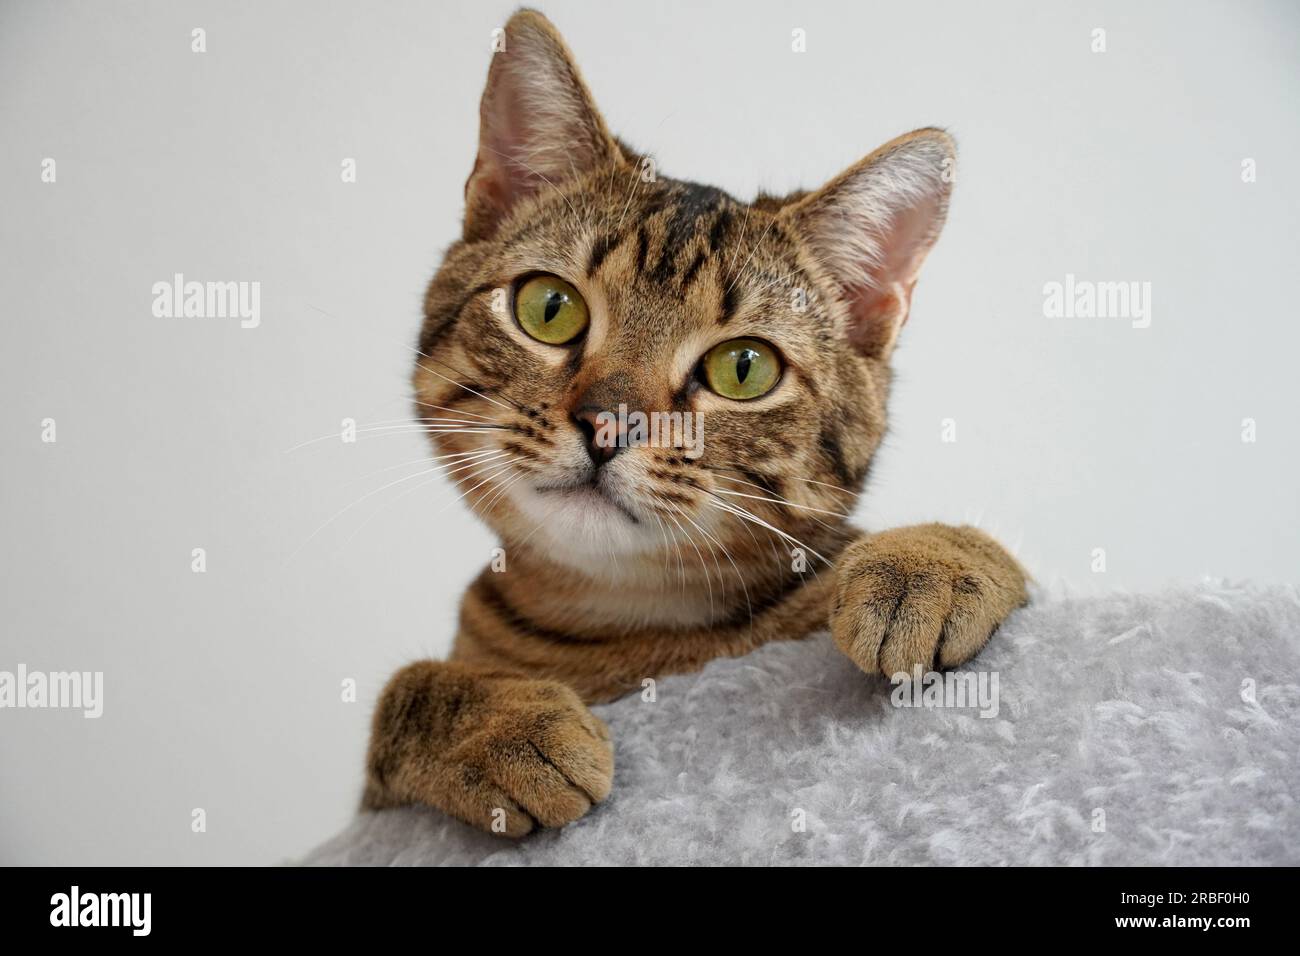 Ein süßes kleines Kätzchen schaut von oben runter und sagt: "Hey, was ist los?" Stockfoto